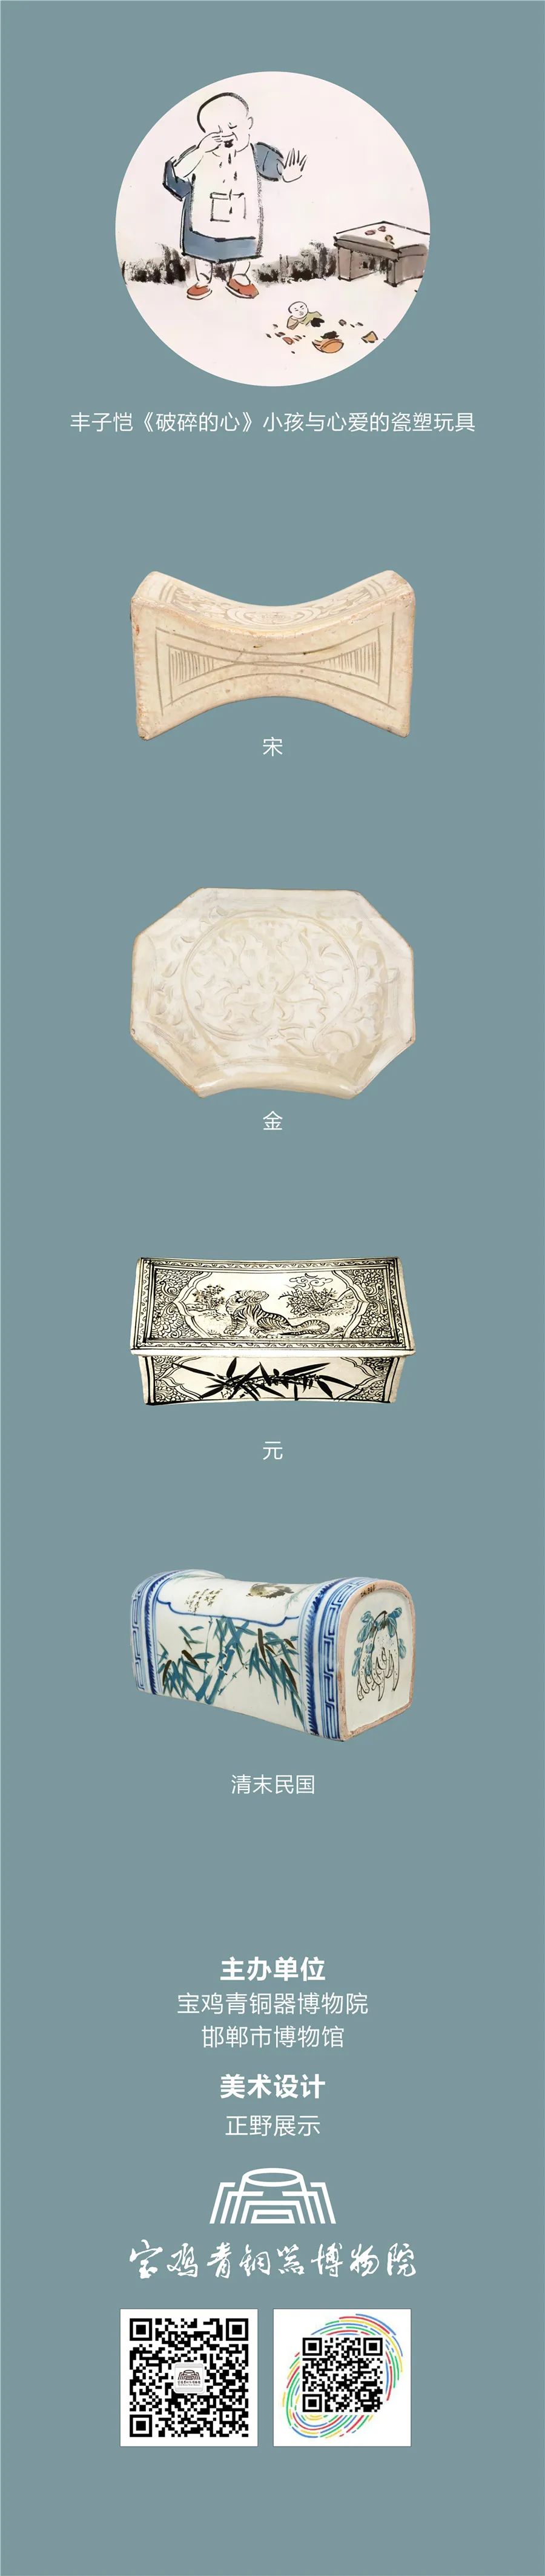 线上展览：《千年窑火生生不息——邯郸市博物馆馆藏磁州窑瓷器展》第一期